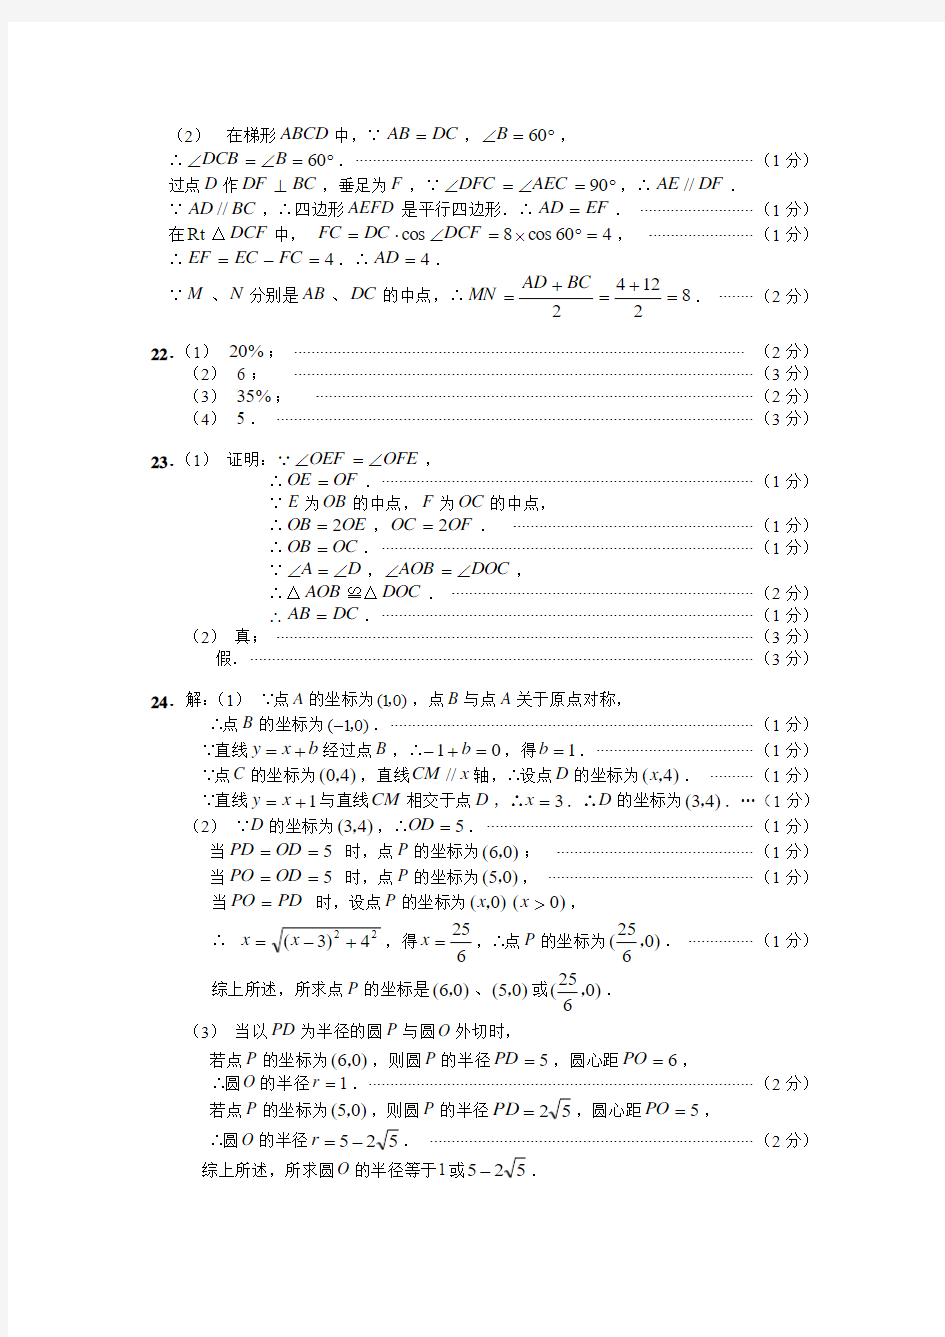 2009年上海市初中毕业统一学业考试数学卷答案wrod